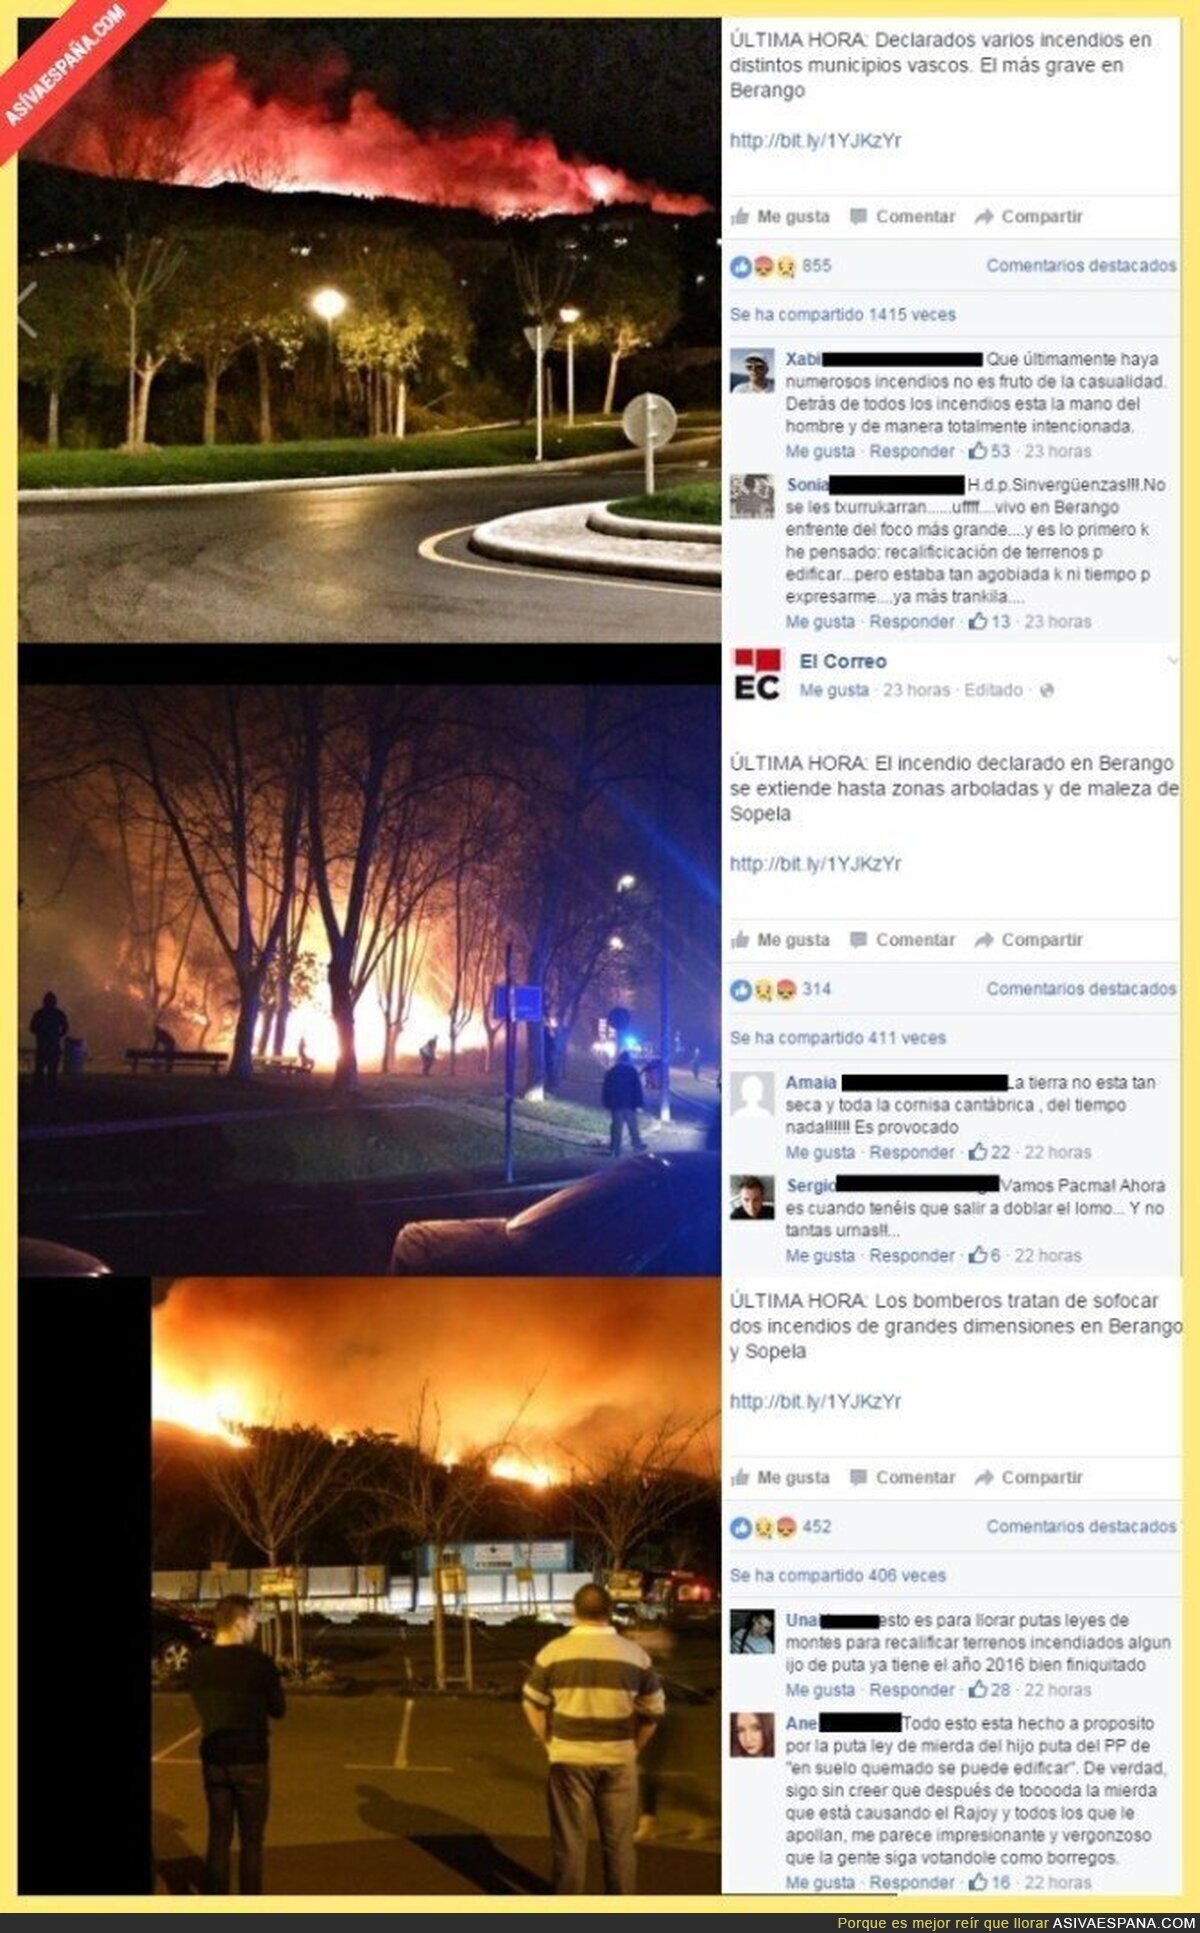 La razón de los incendios en el Norte de España: Vaya vergüenza...